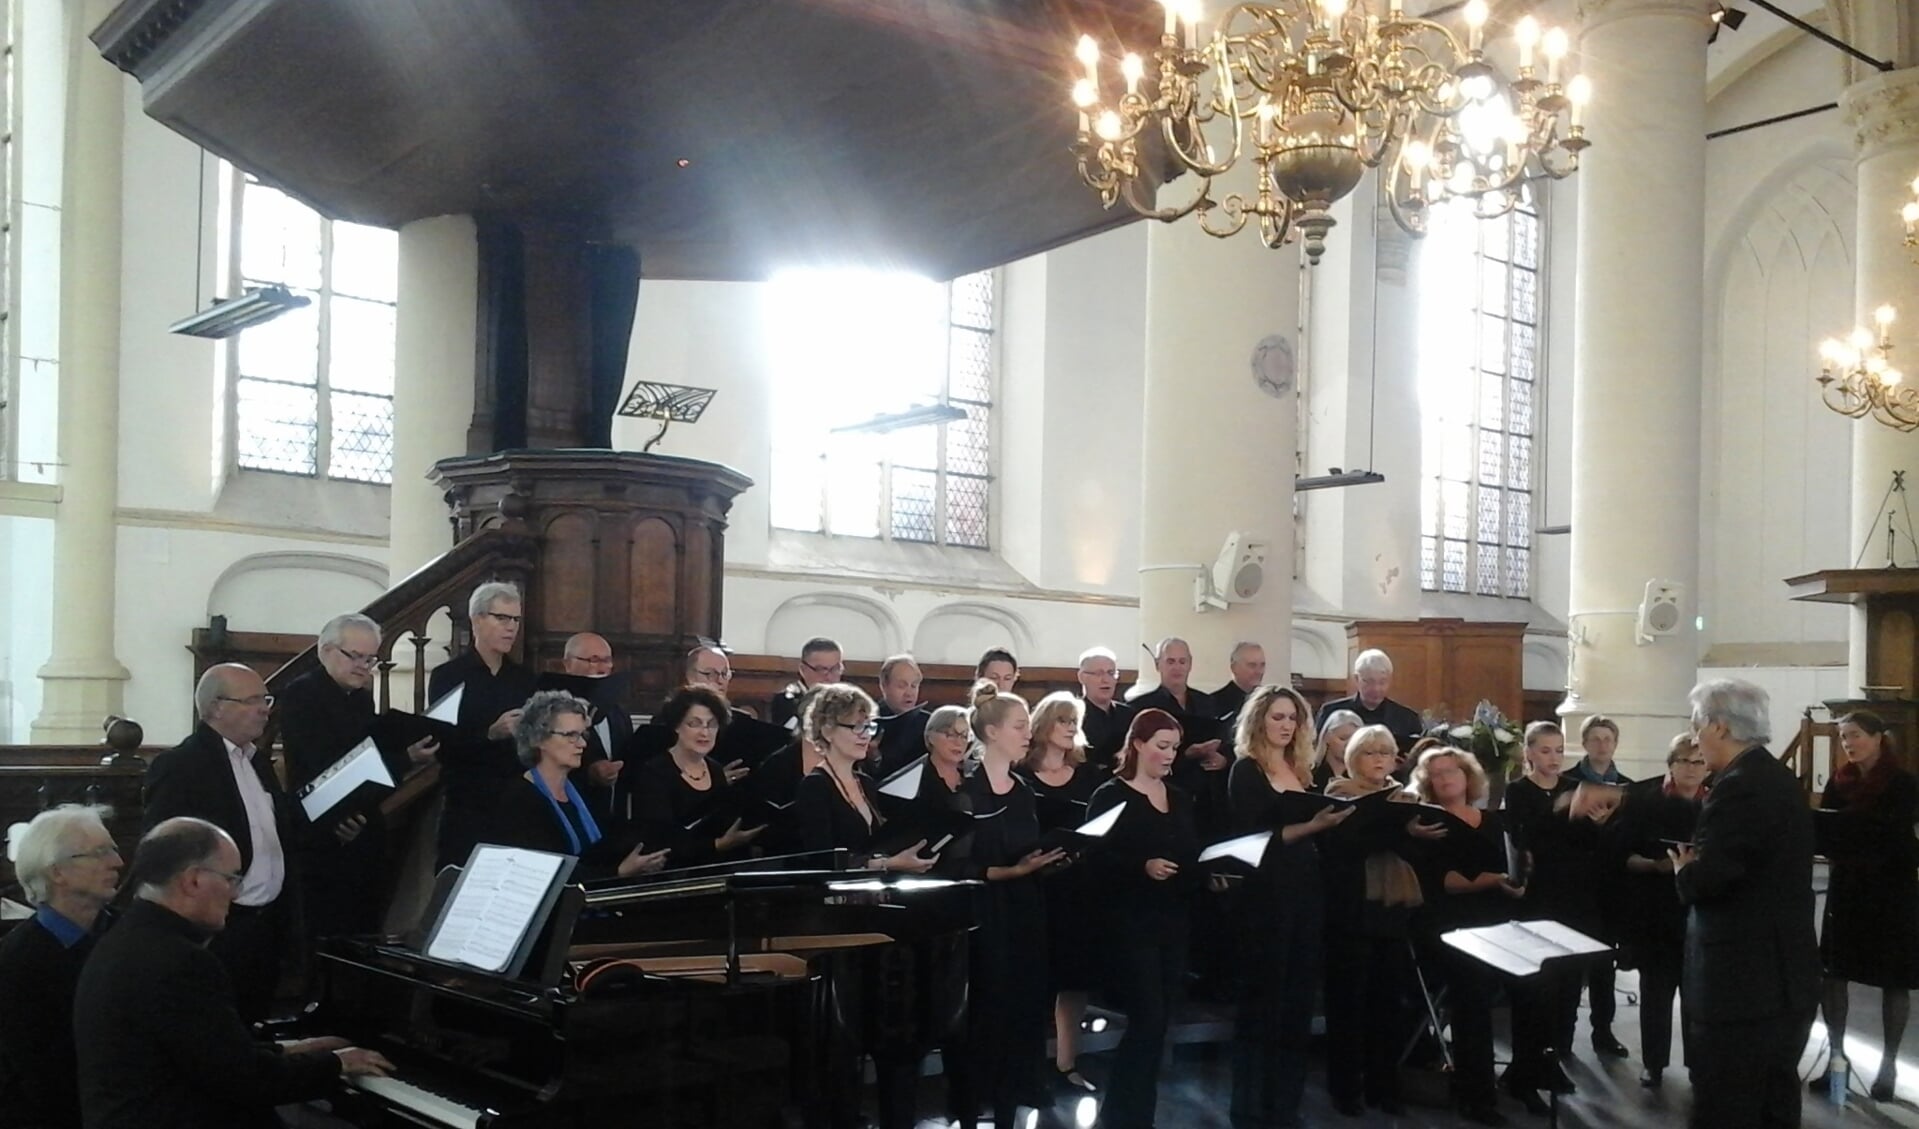 Koor voor nieuwe Nederlandse religieuze muziek